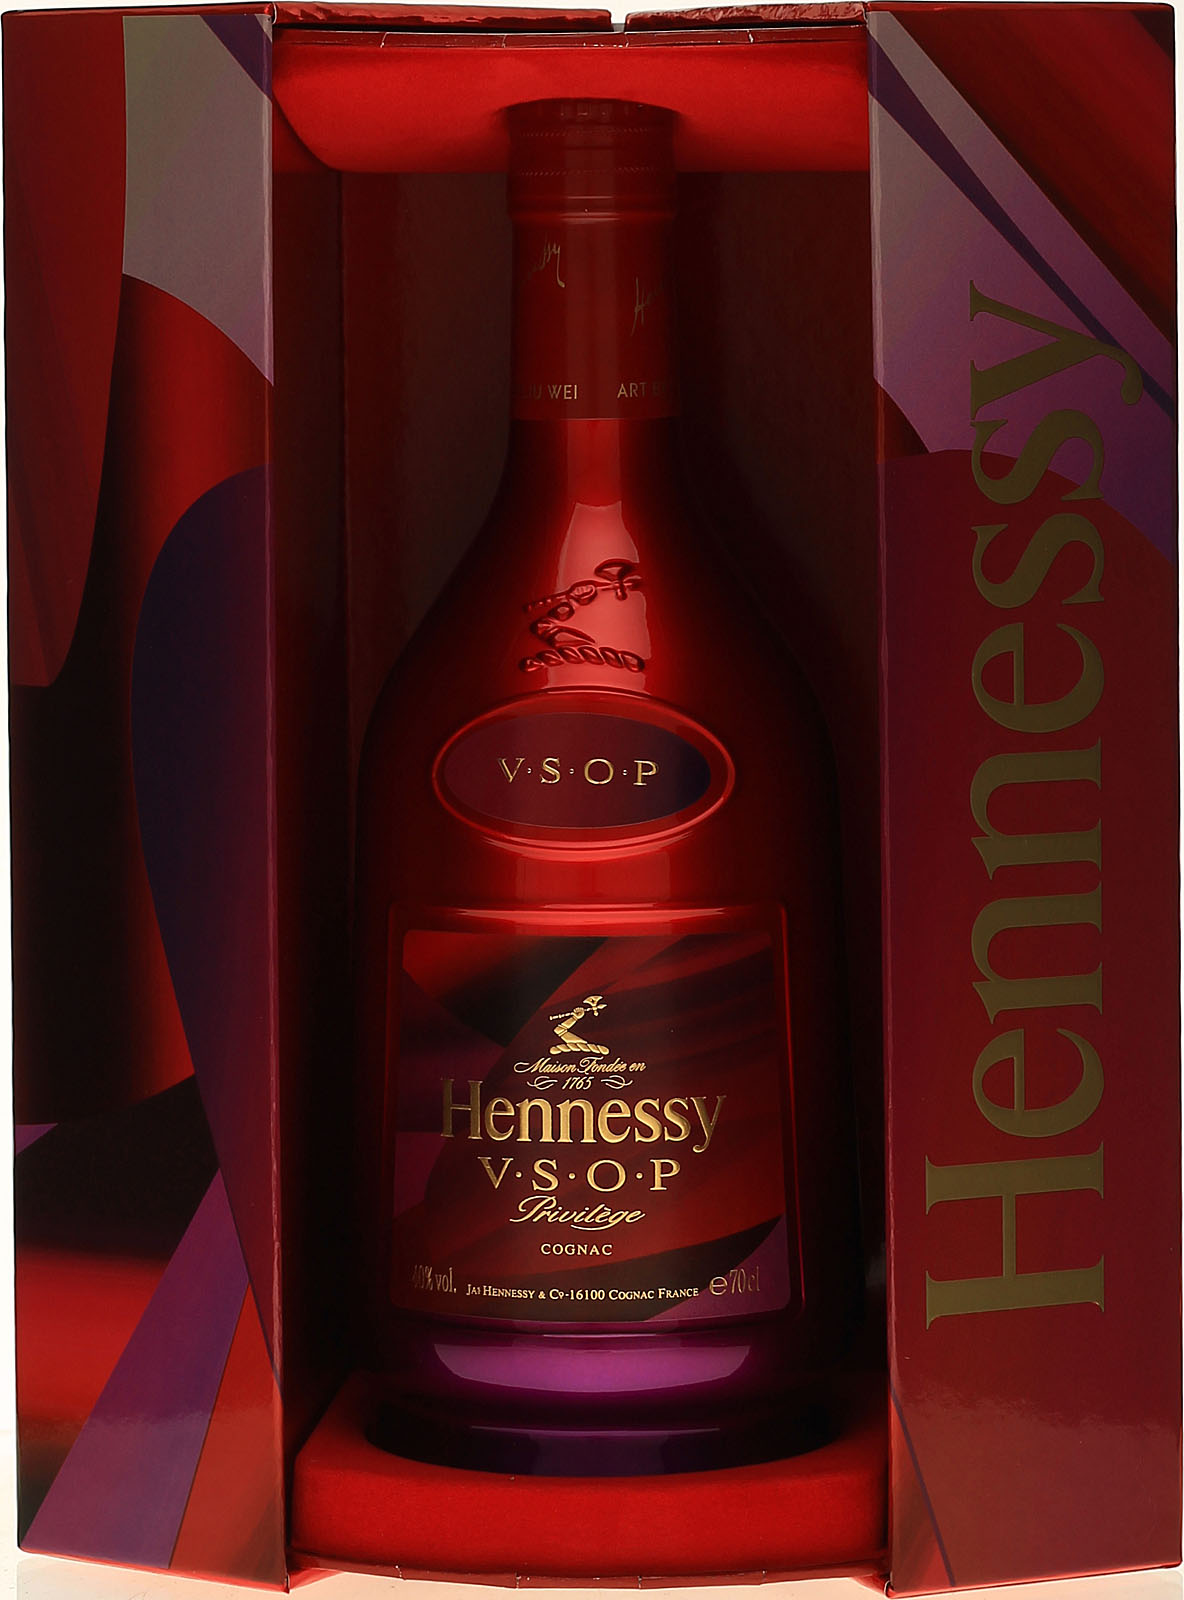 Hennessy V.S.O.P Lunar New Year Limited Edition by Liu Wie kaufen.